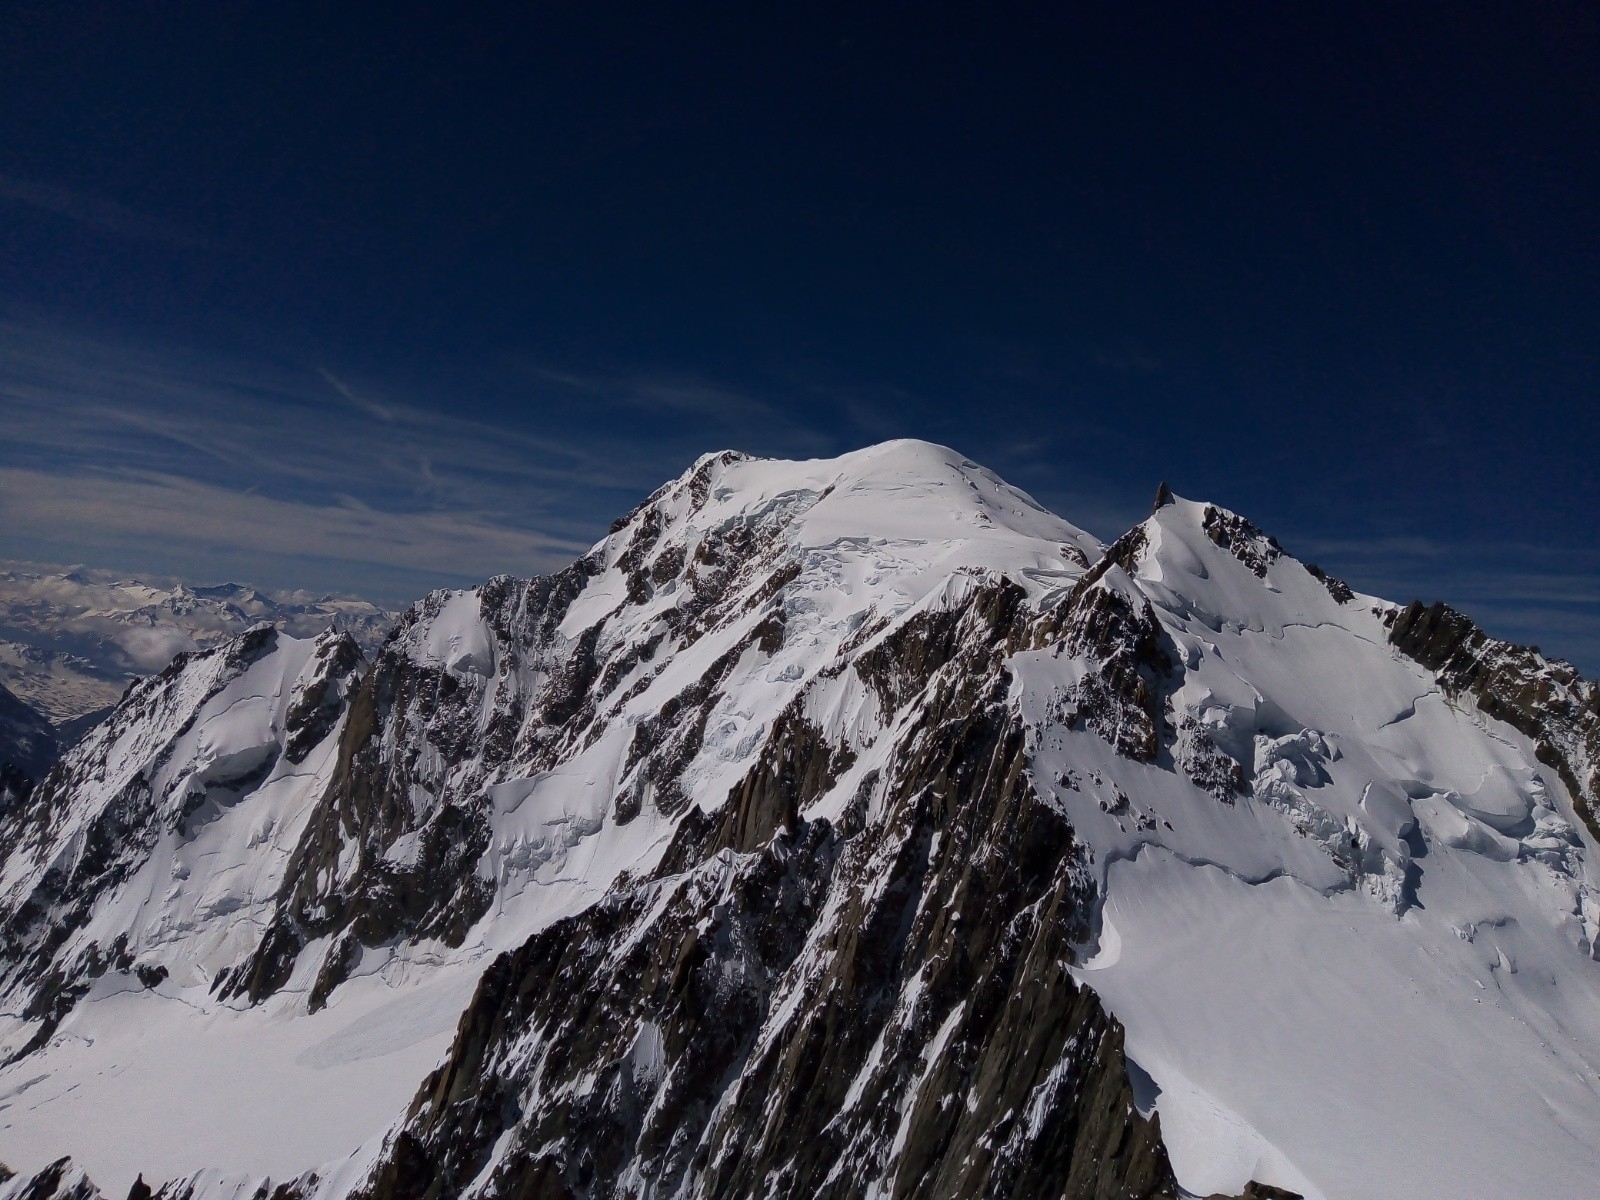 Maudit et Mont Blanc